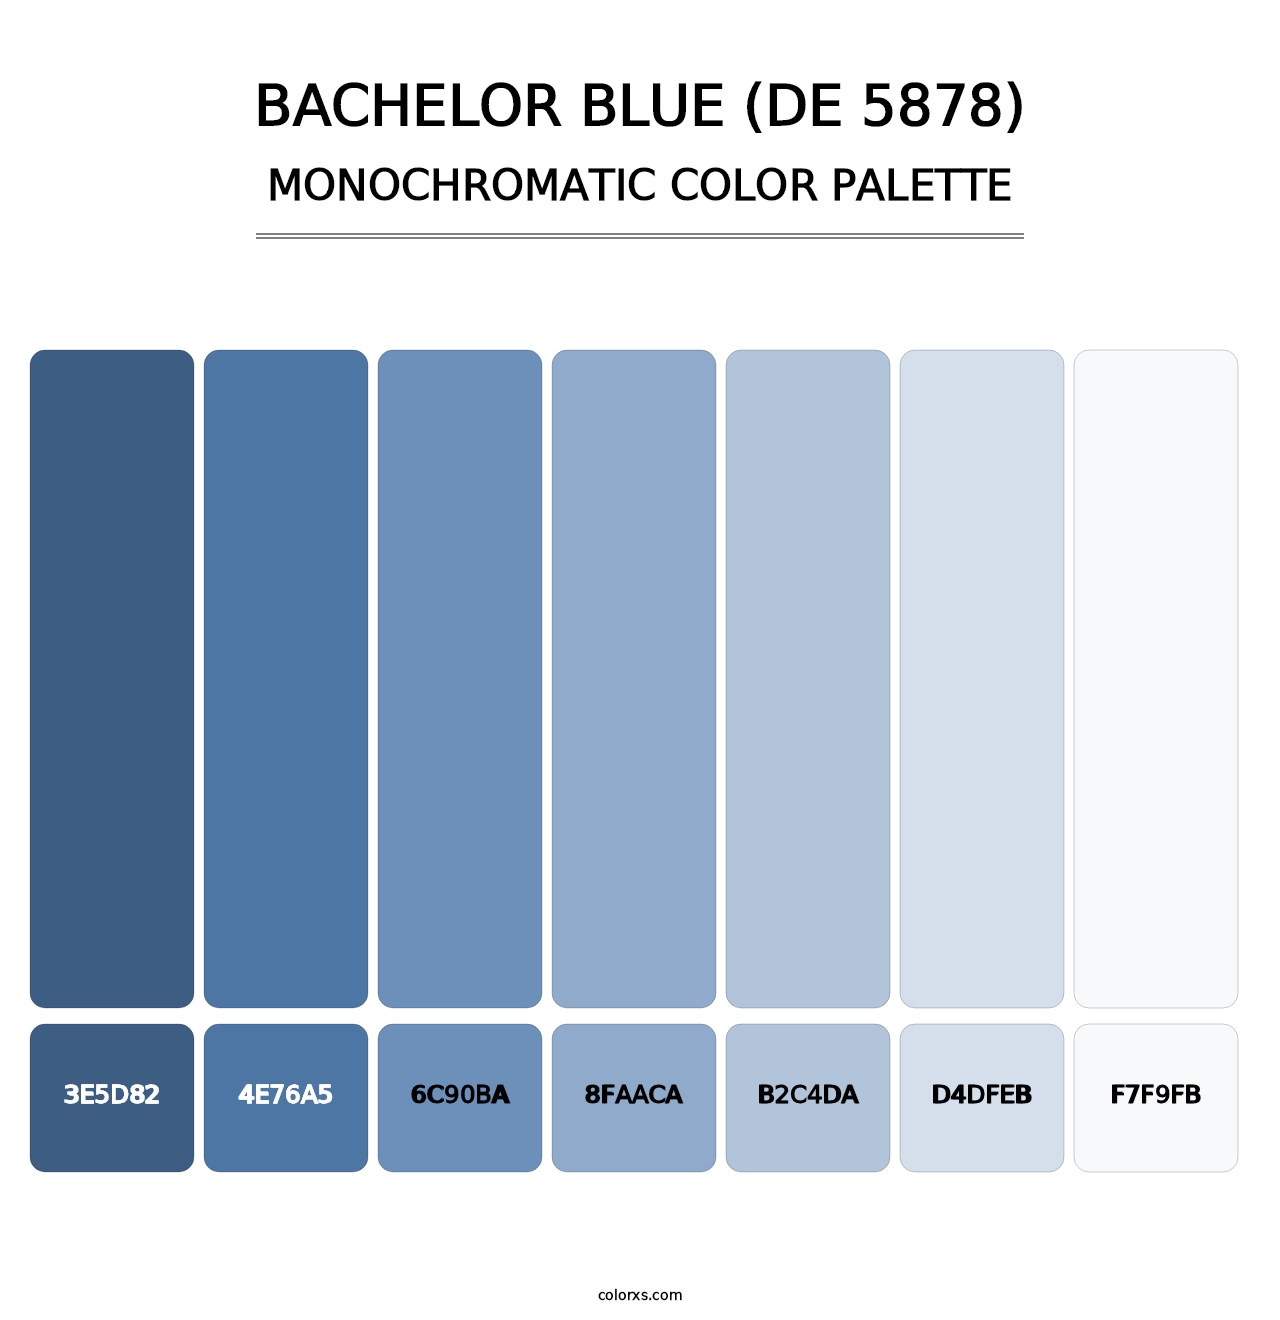 Bachelor Blue (DE 5878) - Monochromatic Color Palette